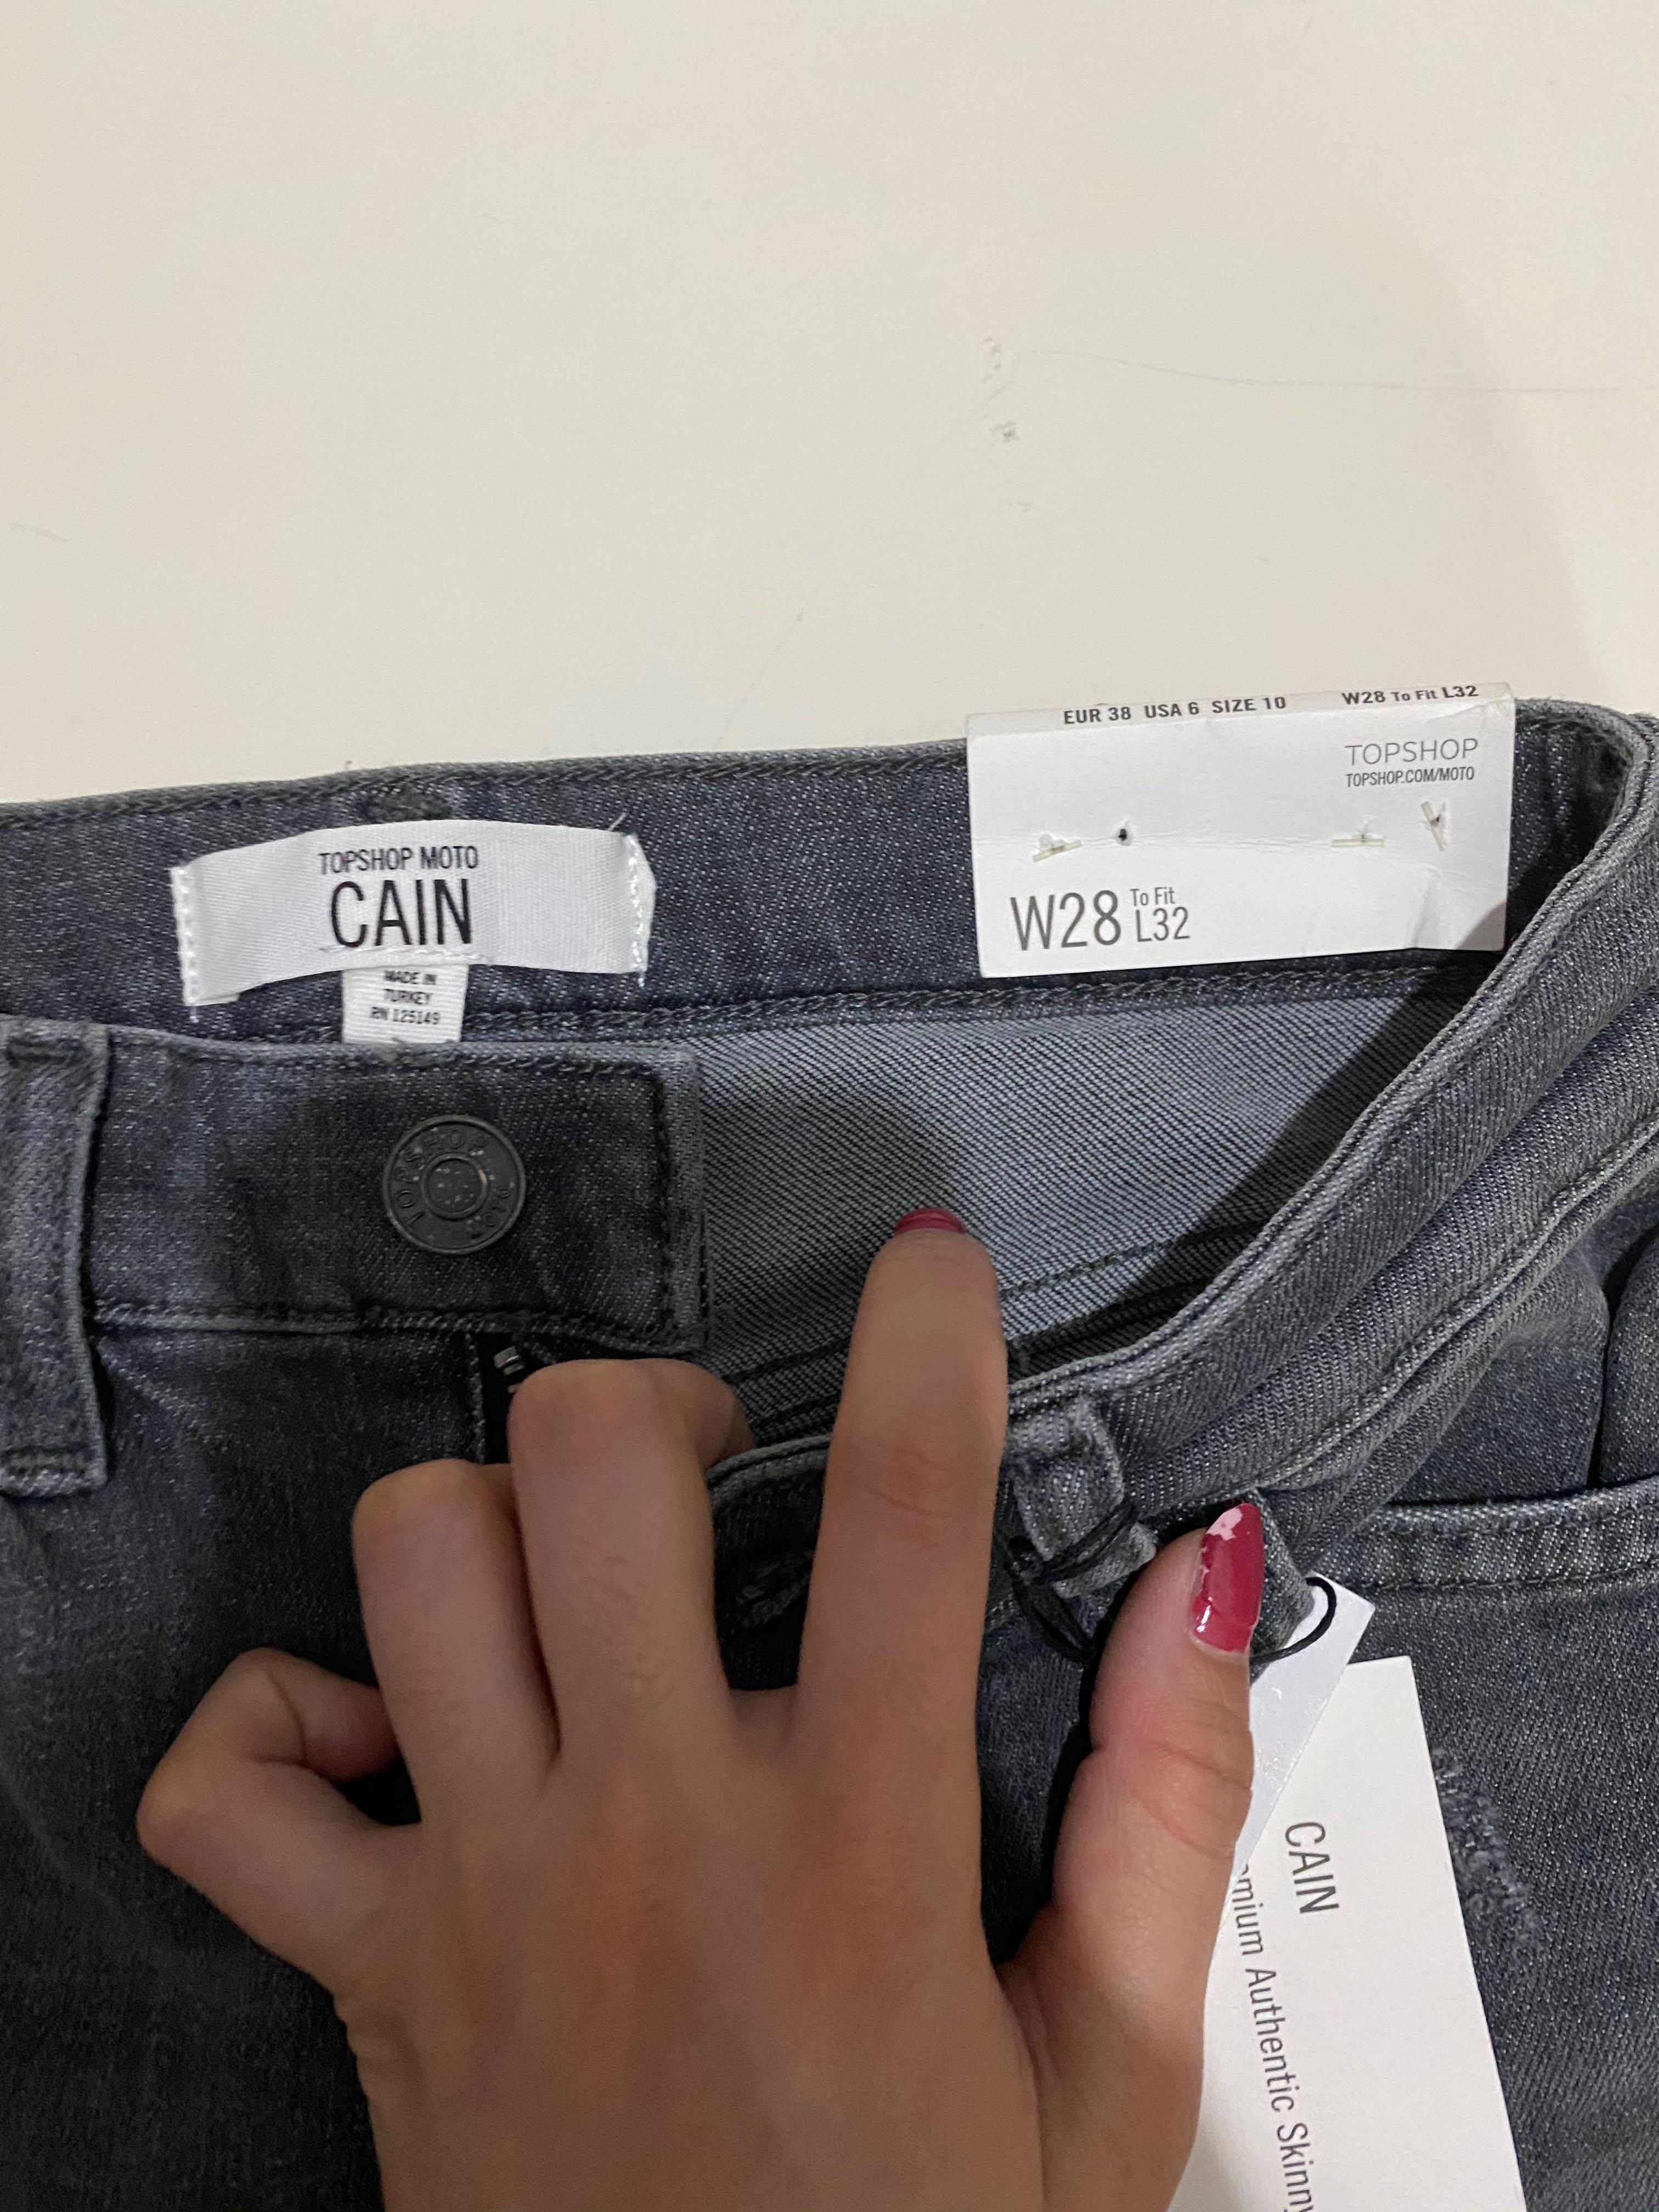 topshop cain jeans